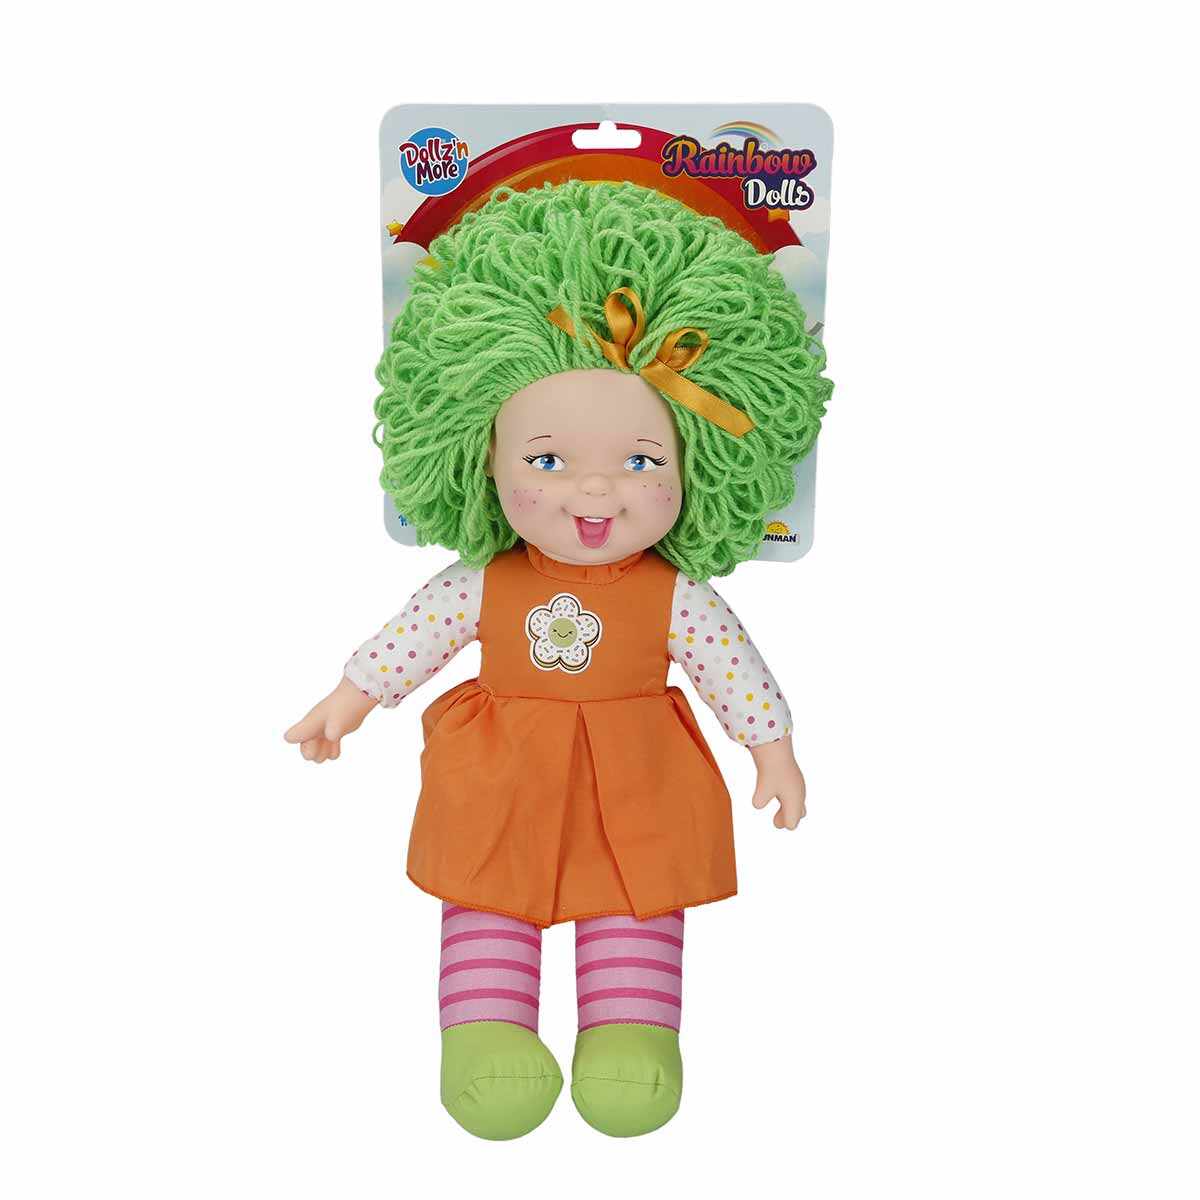 Papusa Rainbow Dolls, Dollzn More, cu par verde, 45 cm